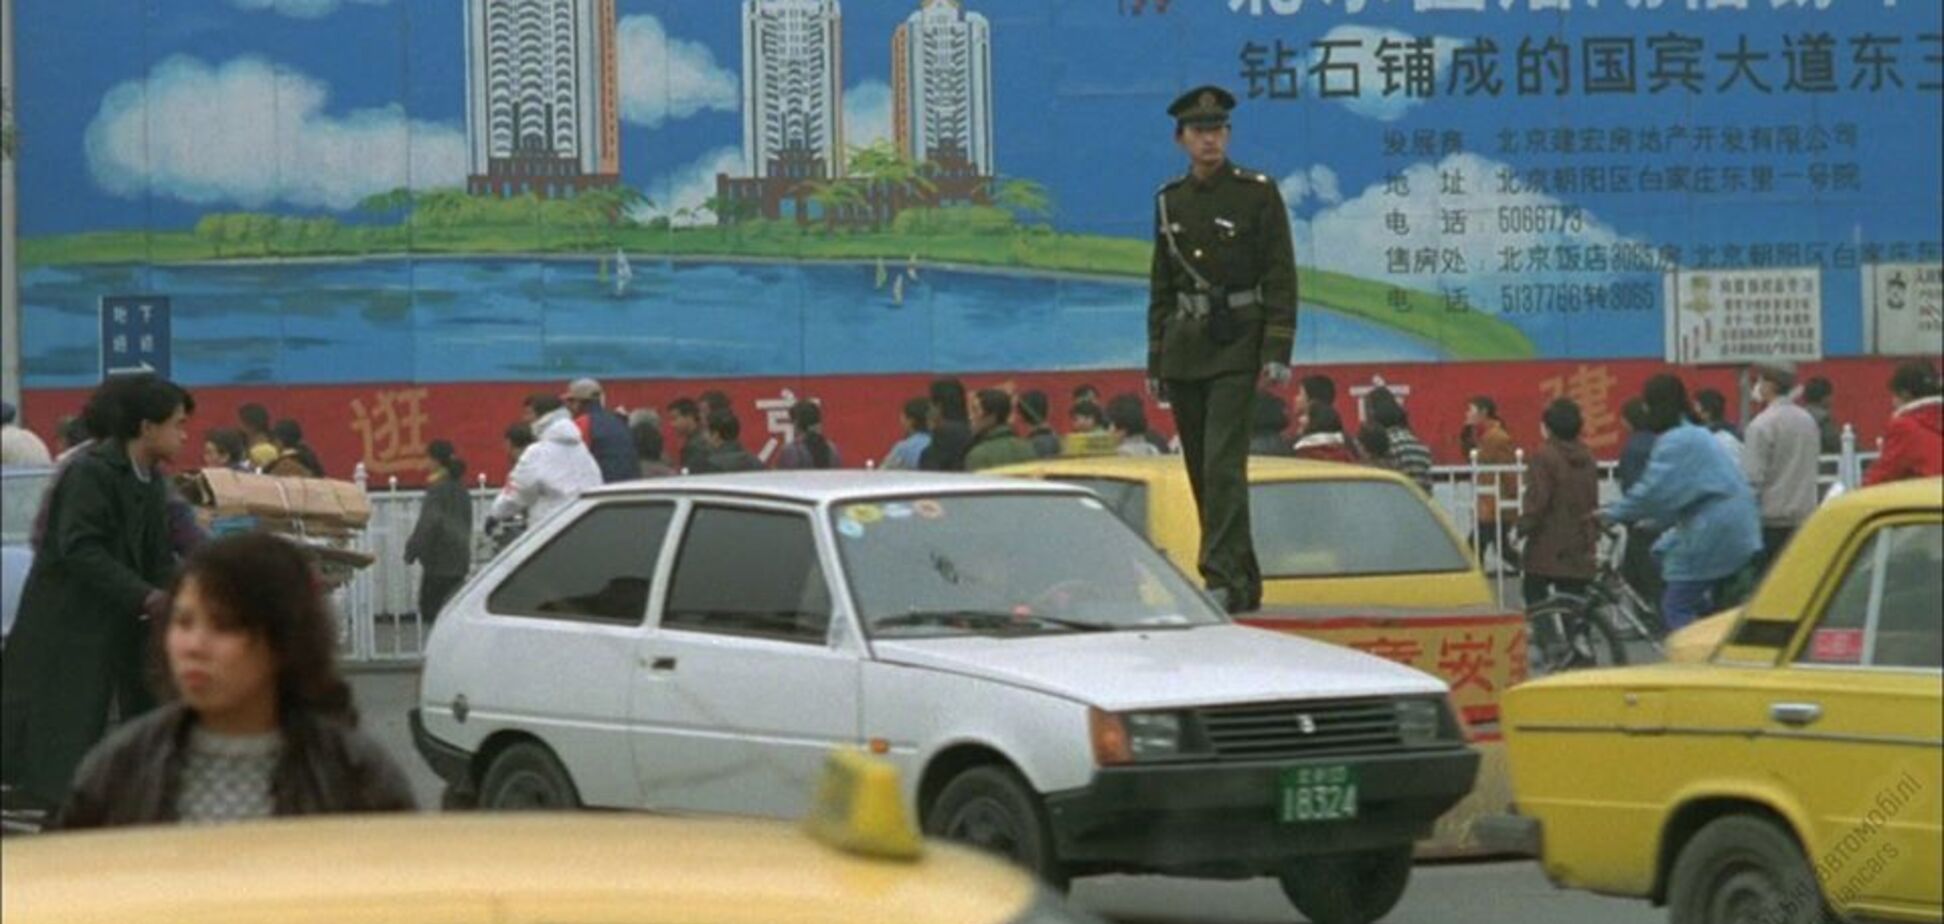 ЗАЗ Таврия на съемках фильма в Китае: опубликован уникальный кадр